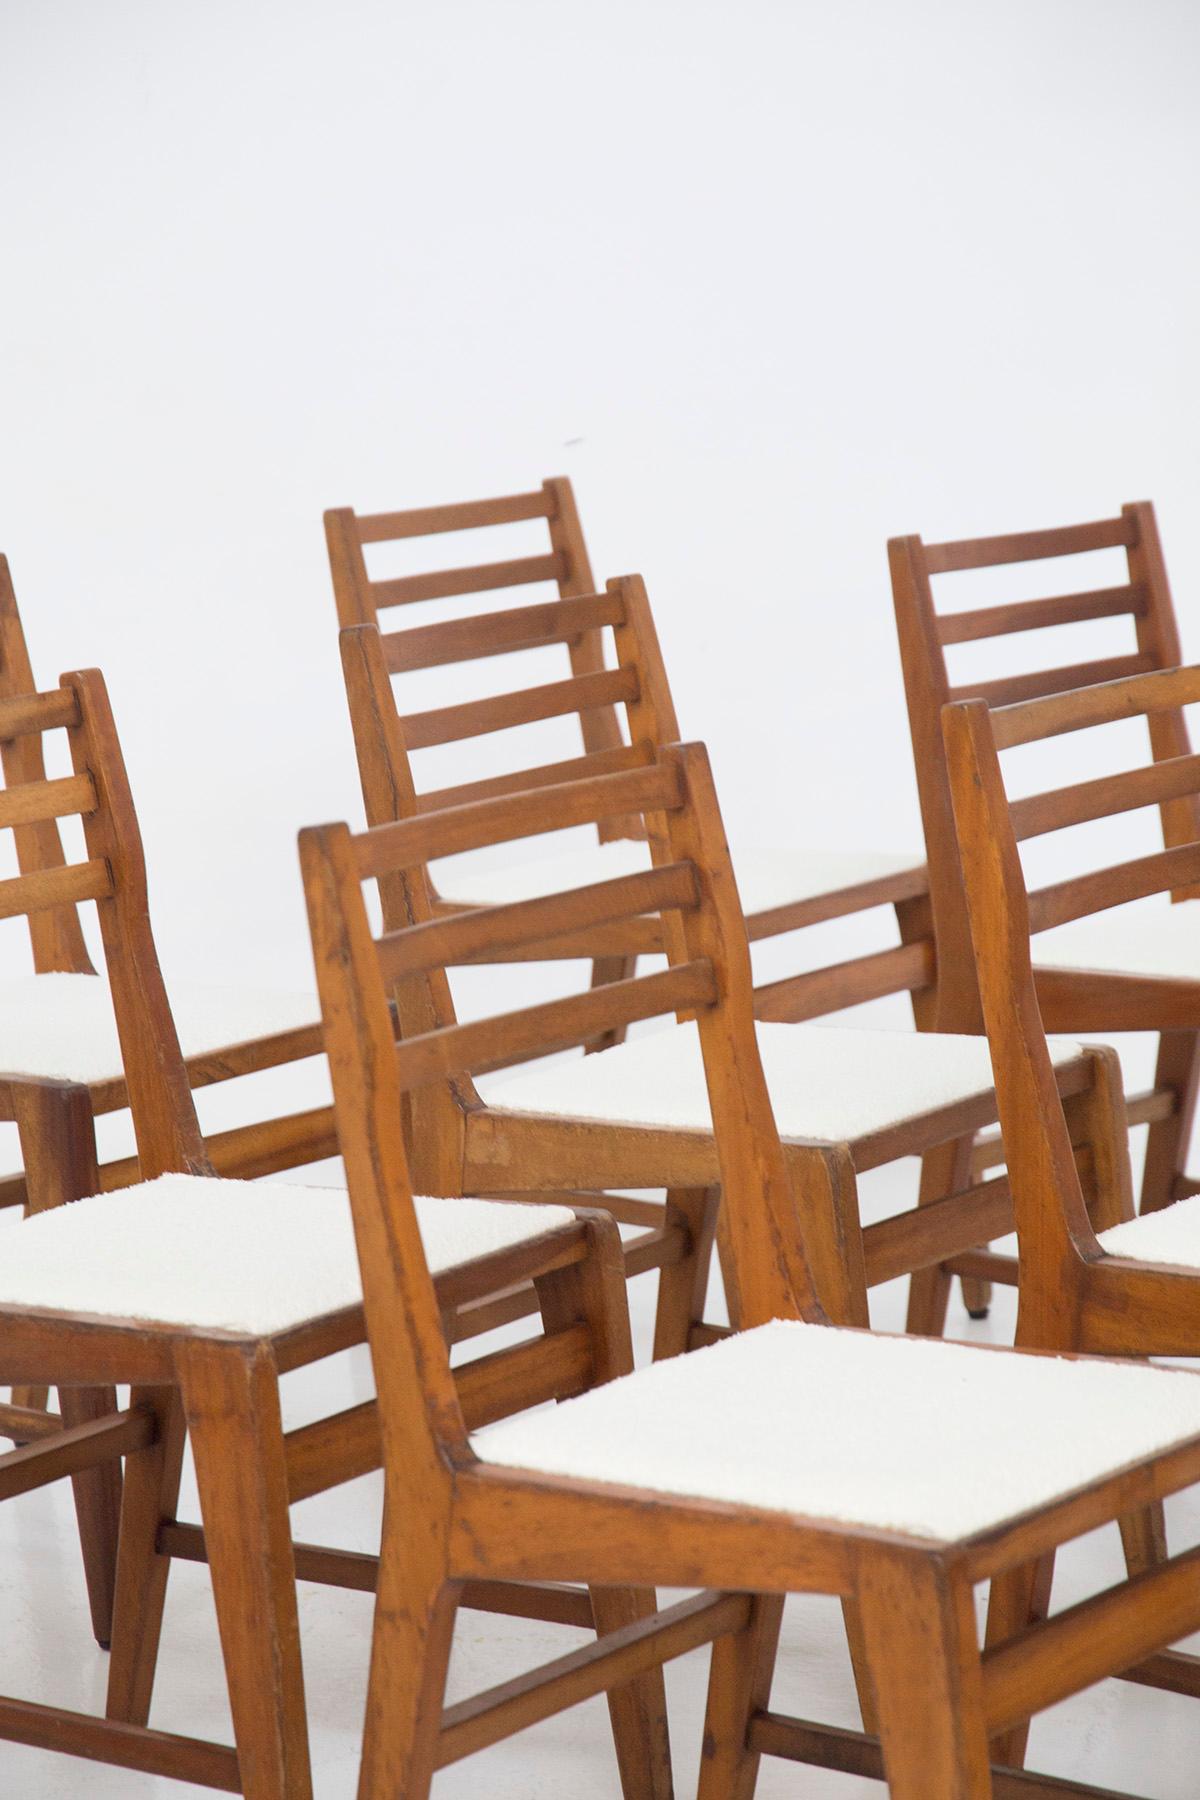 Bel ensemble composé de 12 chaises, conçu par le groupe de designers et d'architectes B.B.P.R. dans les années 1950, belle fabrication italienne.
Les chaises ont une structure en bois très simple, aux lignes rigides, contrastée par la douceur